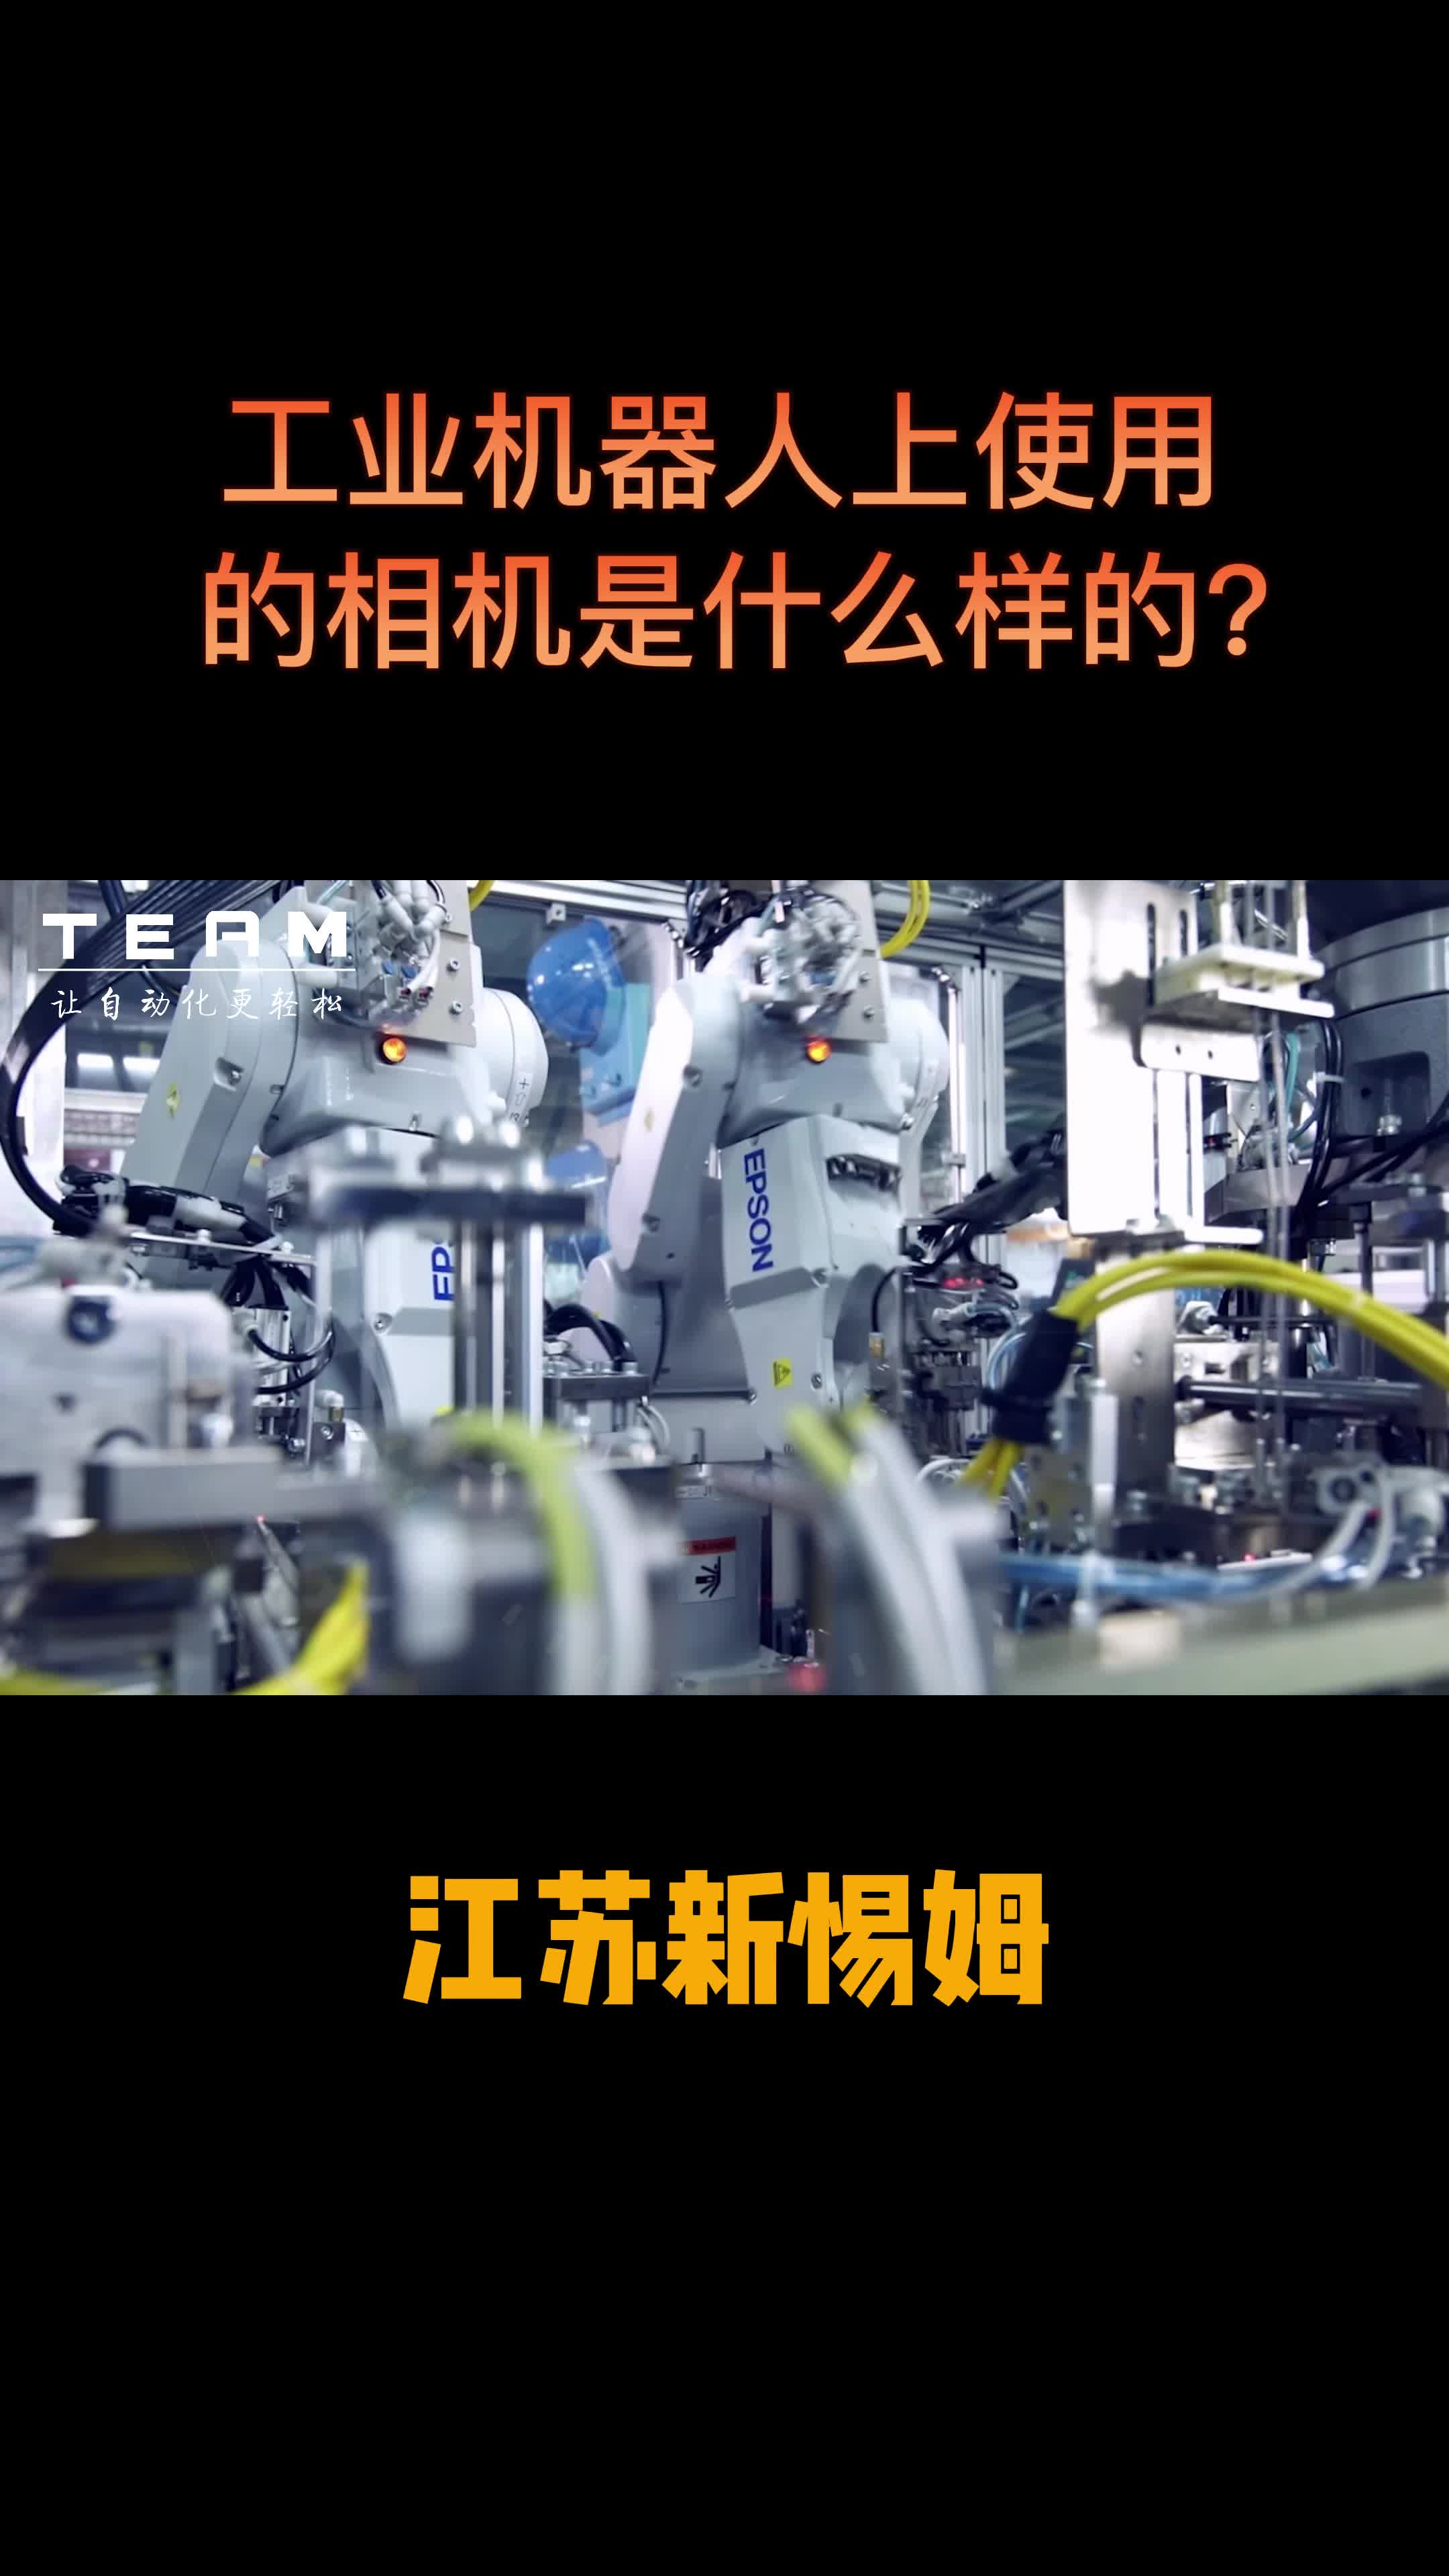 工业机器人上使用的相机是什么样的？#工业
#工业机器人
#相机
#机器人
 